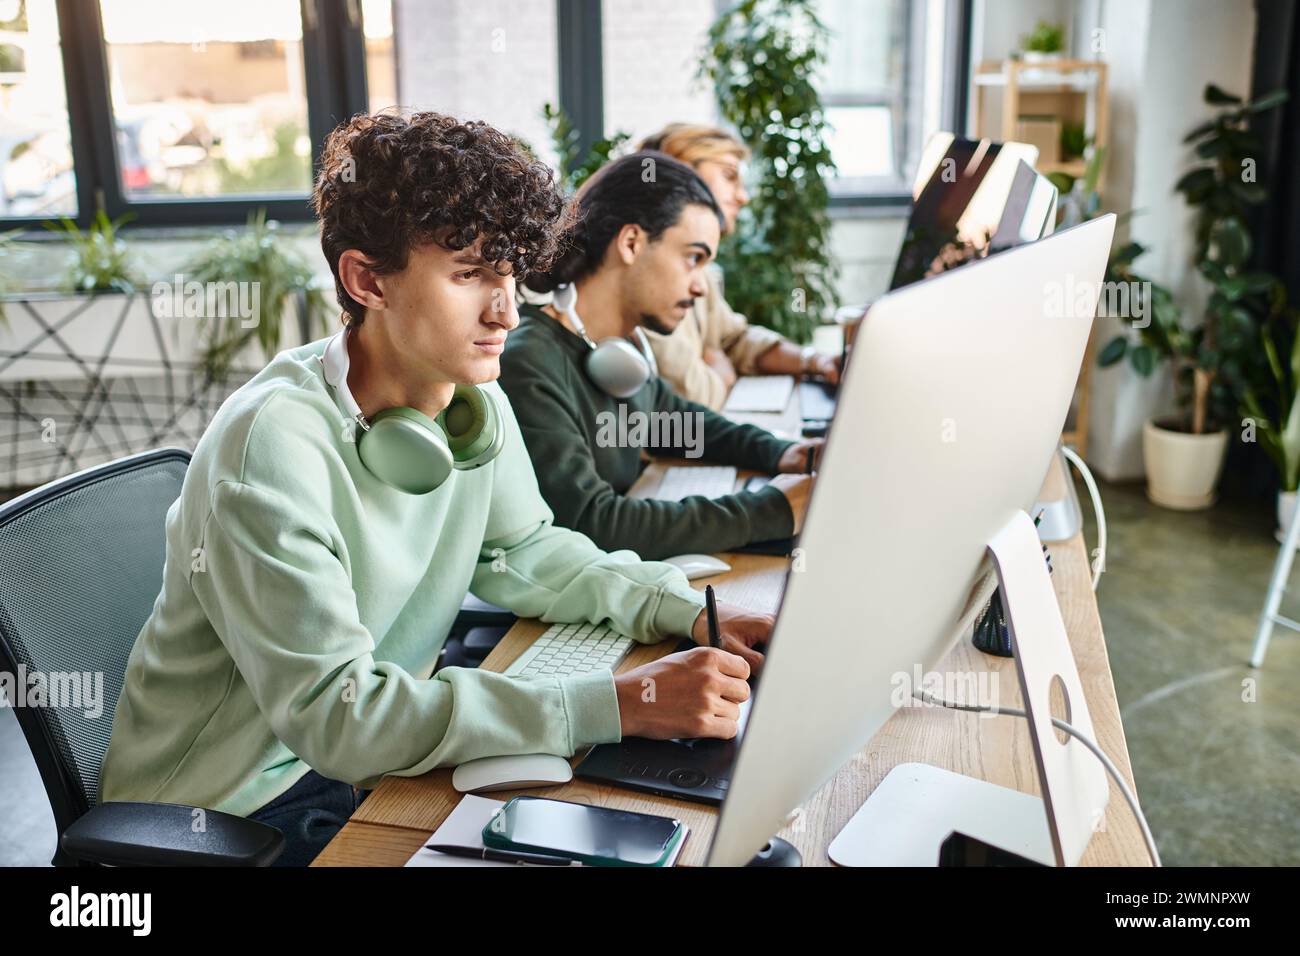 Fokussierter Mann mit lockigen Haaren, der Fotos auf dem Tablet bearbeitet und den Monitor in einem modernen Startup-Büro betrachtet Stockfoto